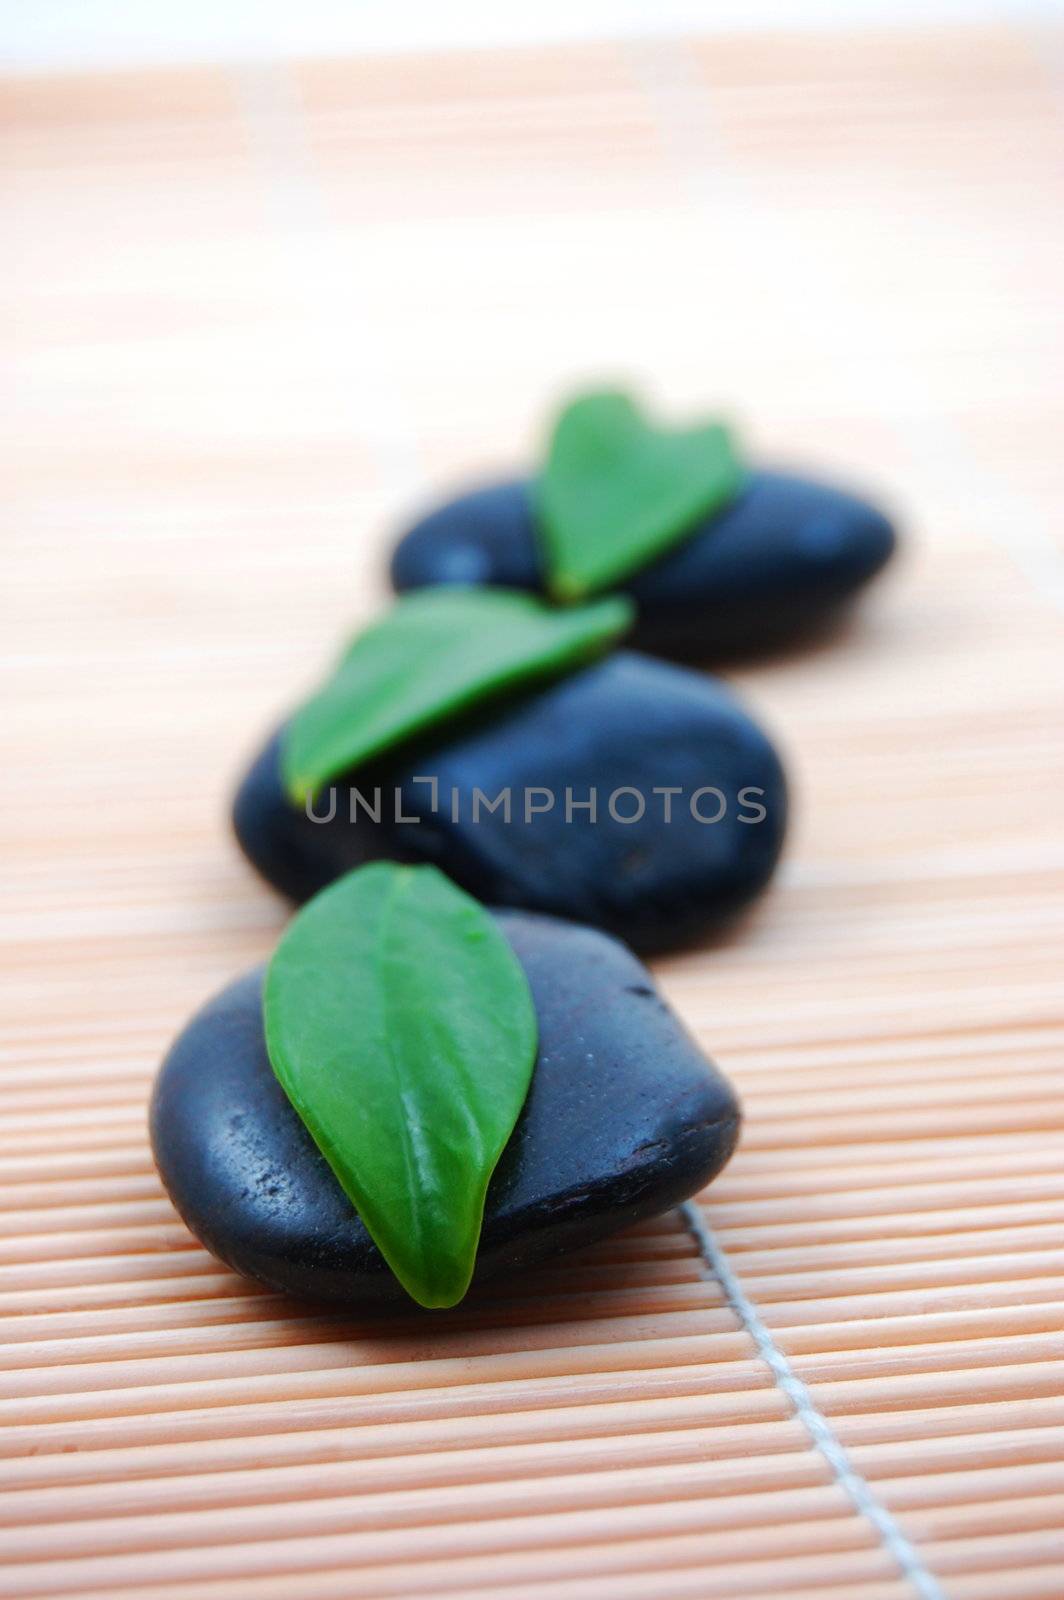 zen stones in bathroom showing a wellness concept